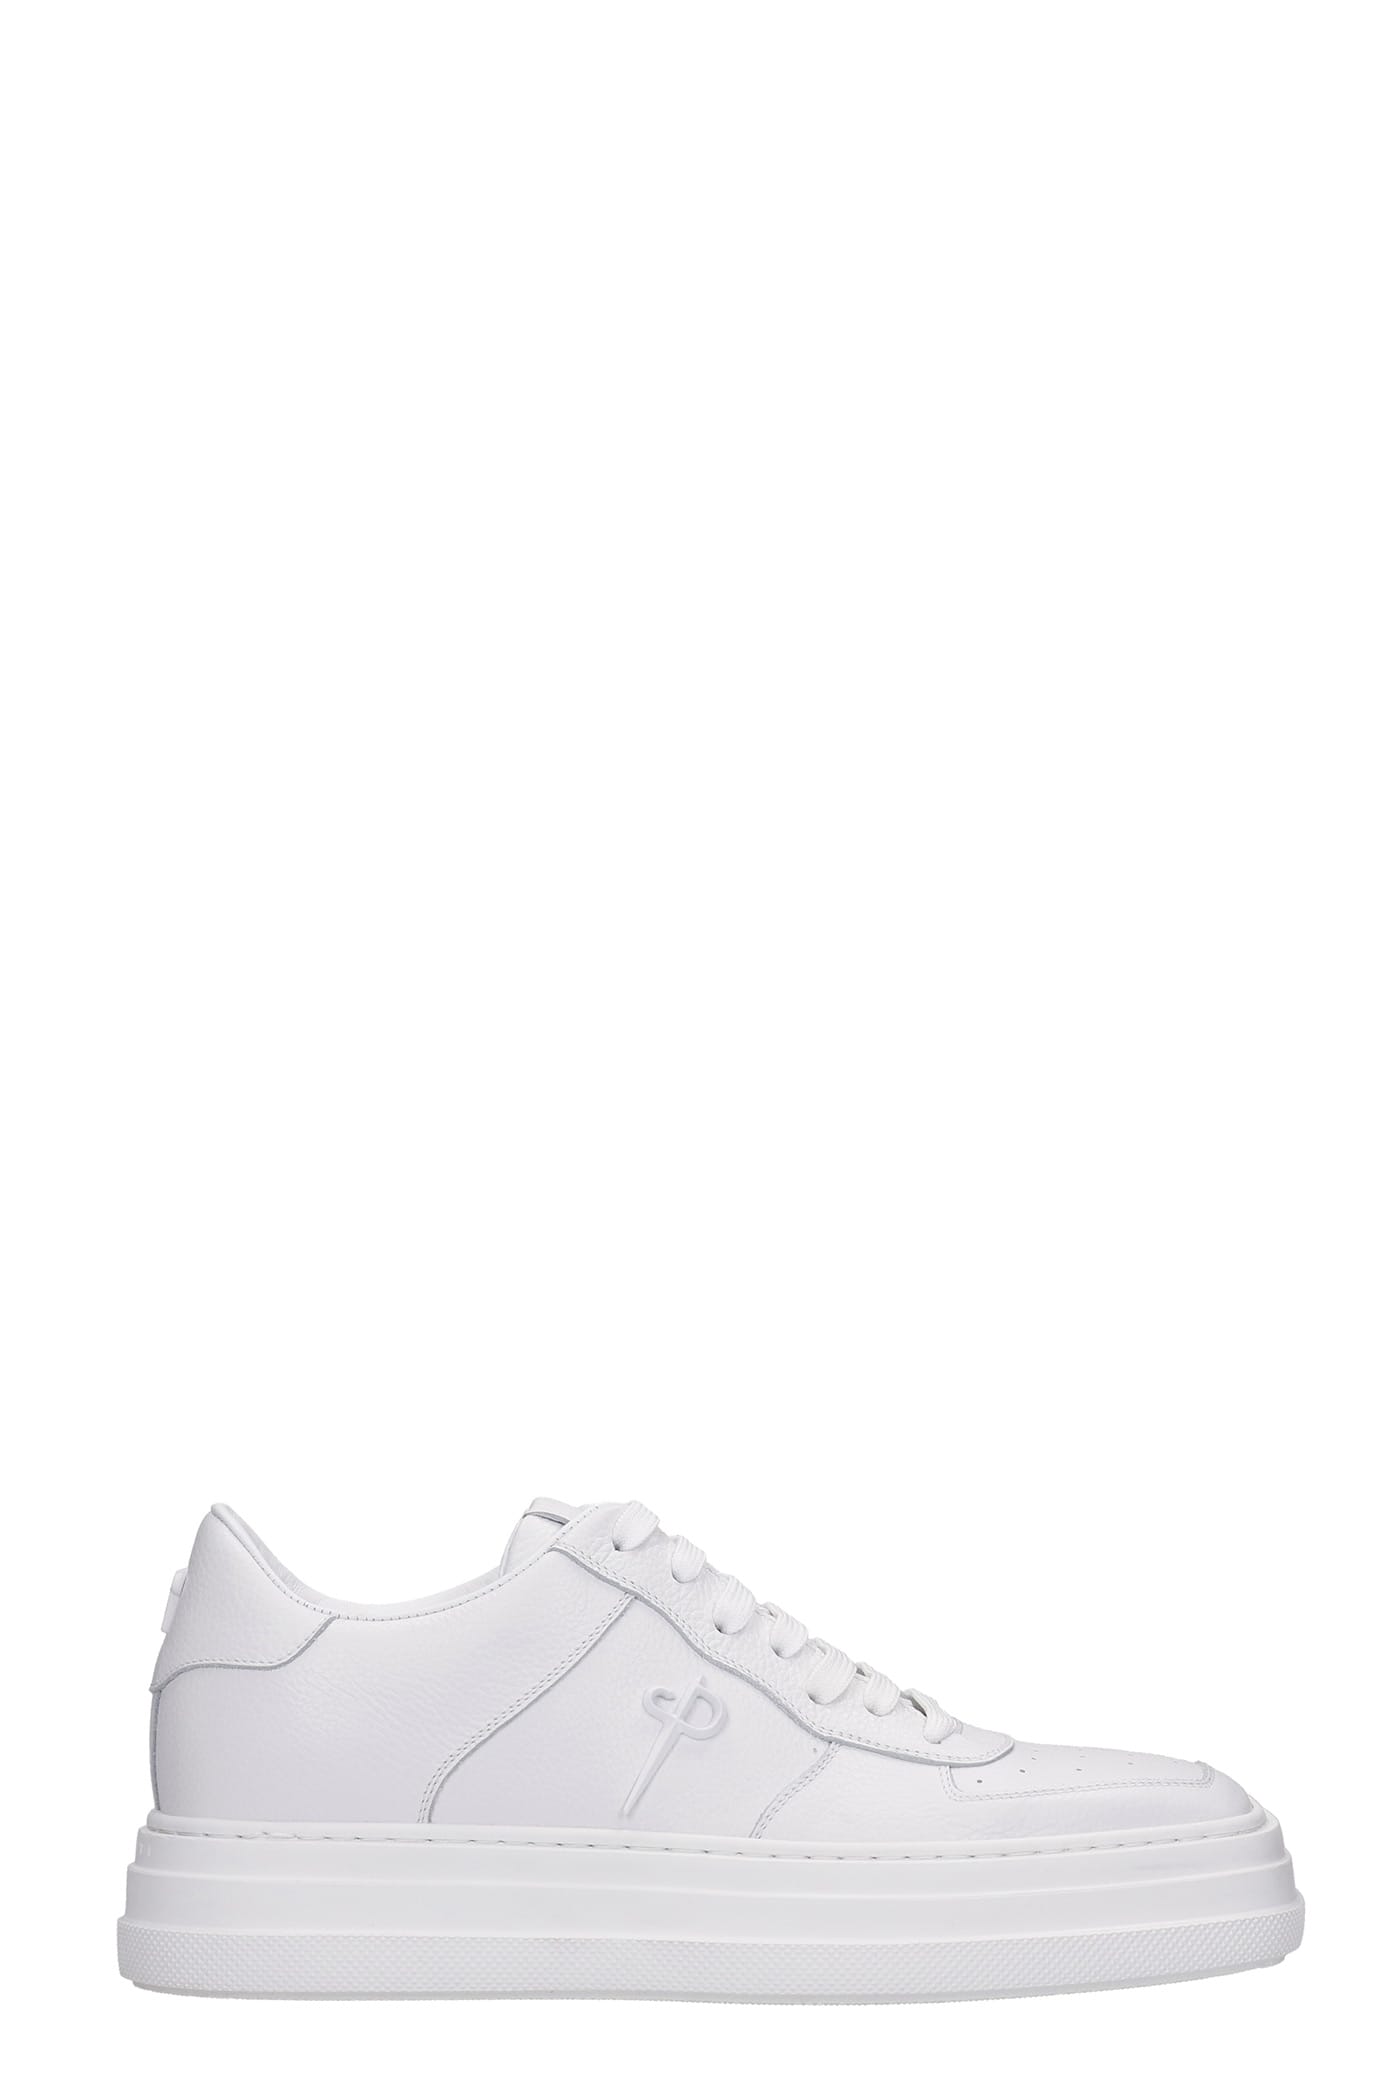 Cesare Paciotti Sneakers In White Leather